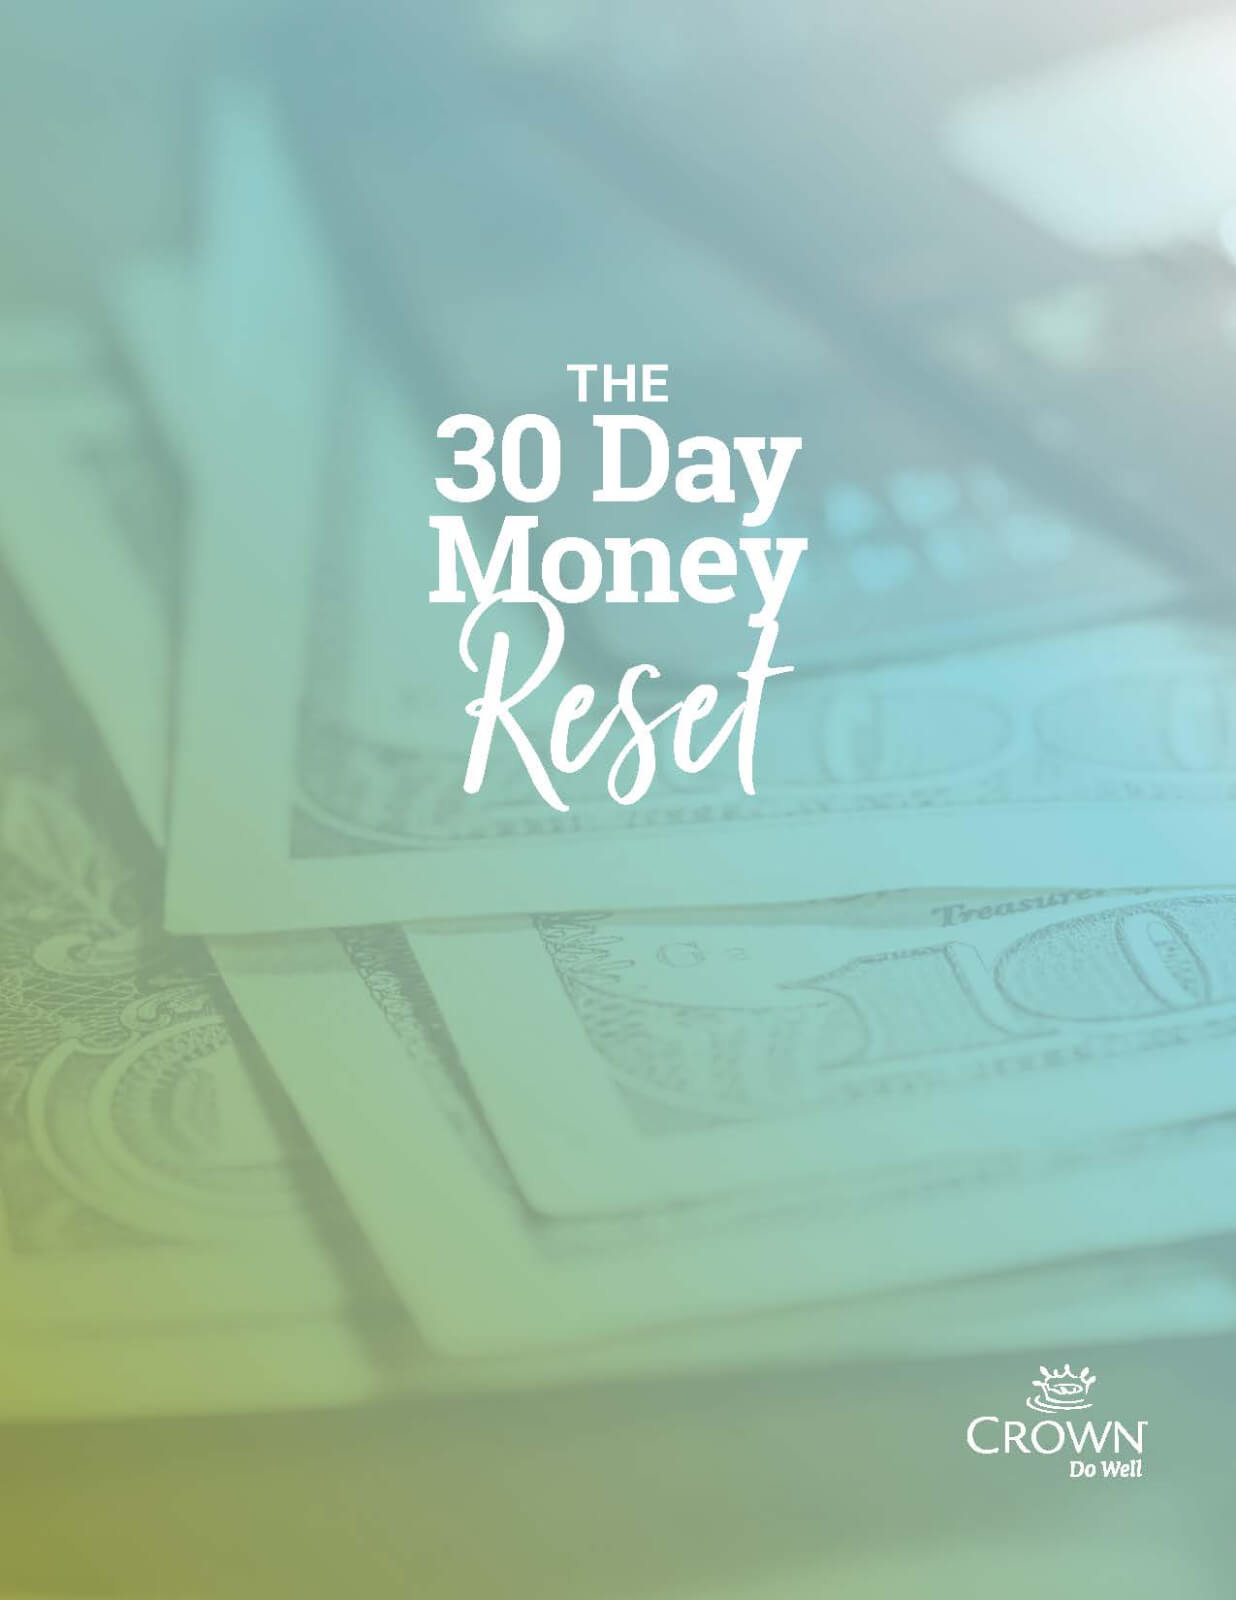 30 Day money reset image